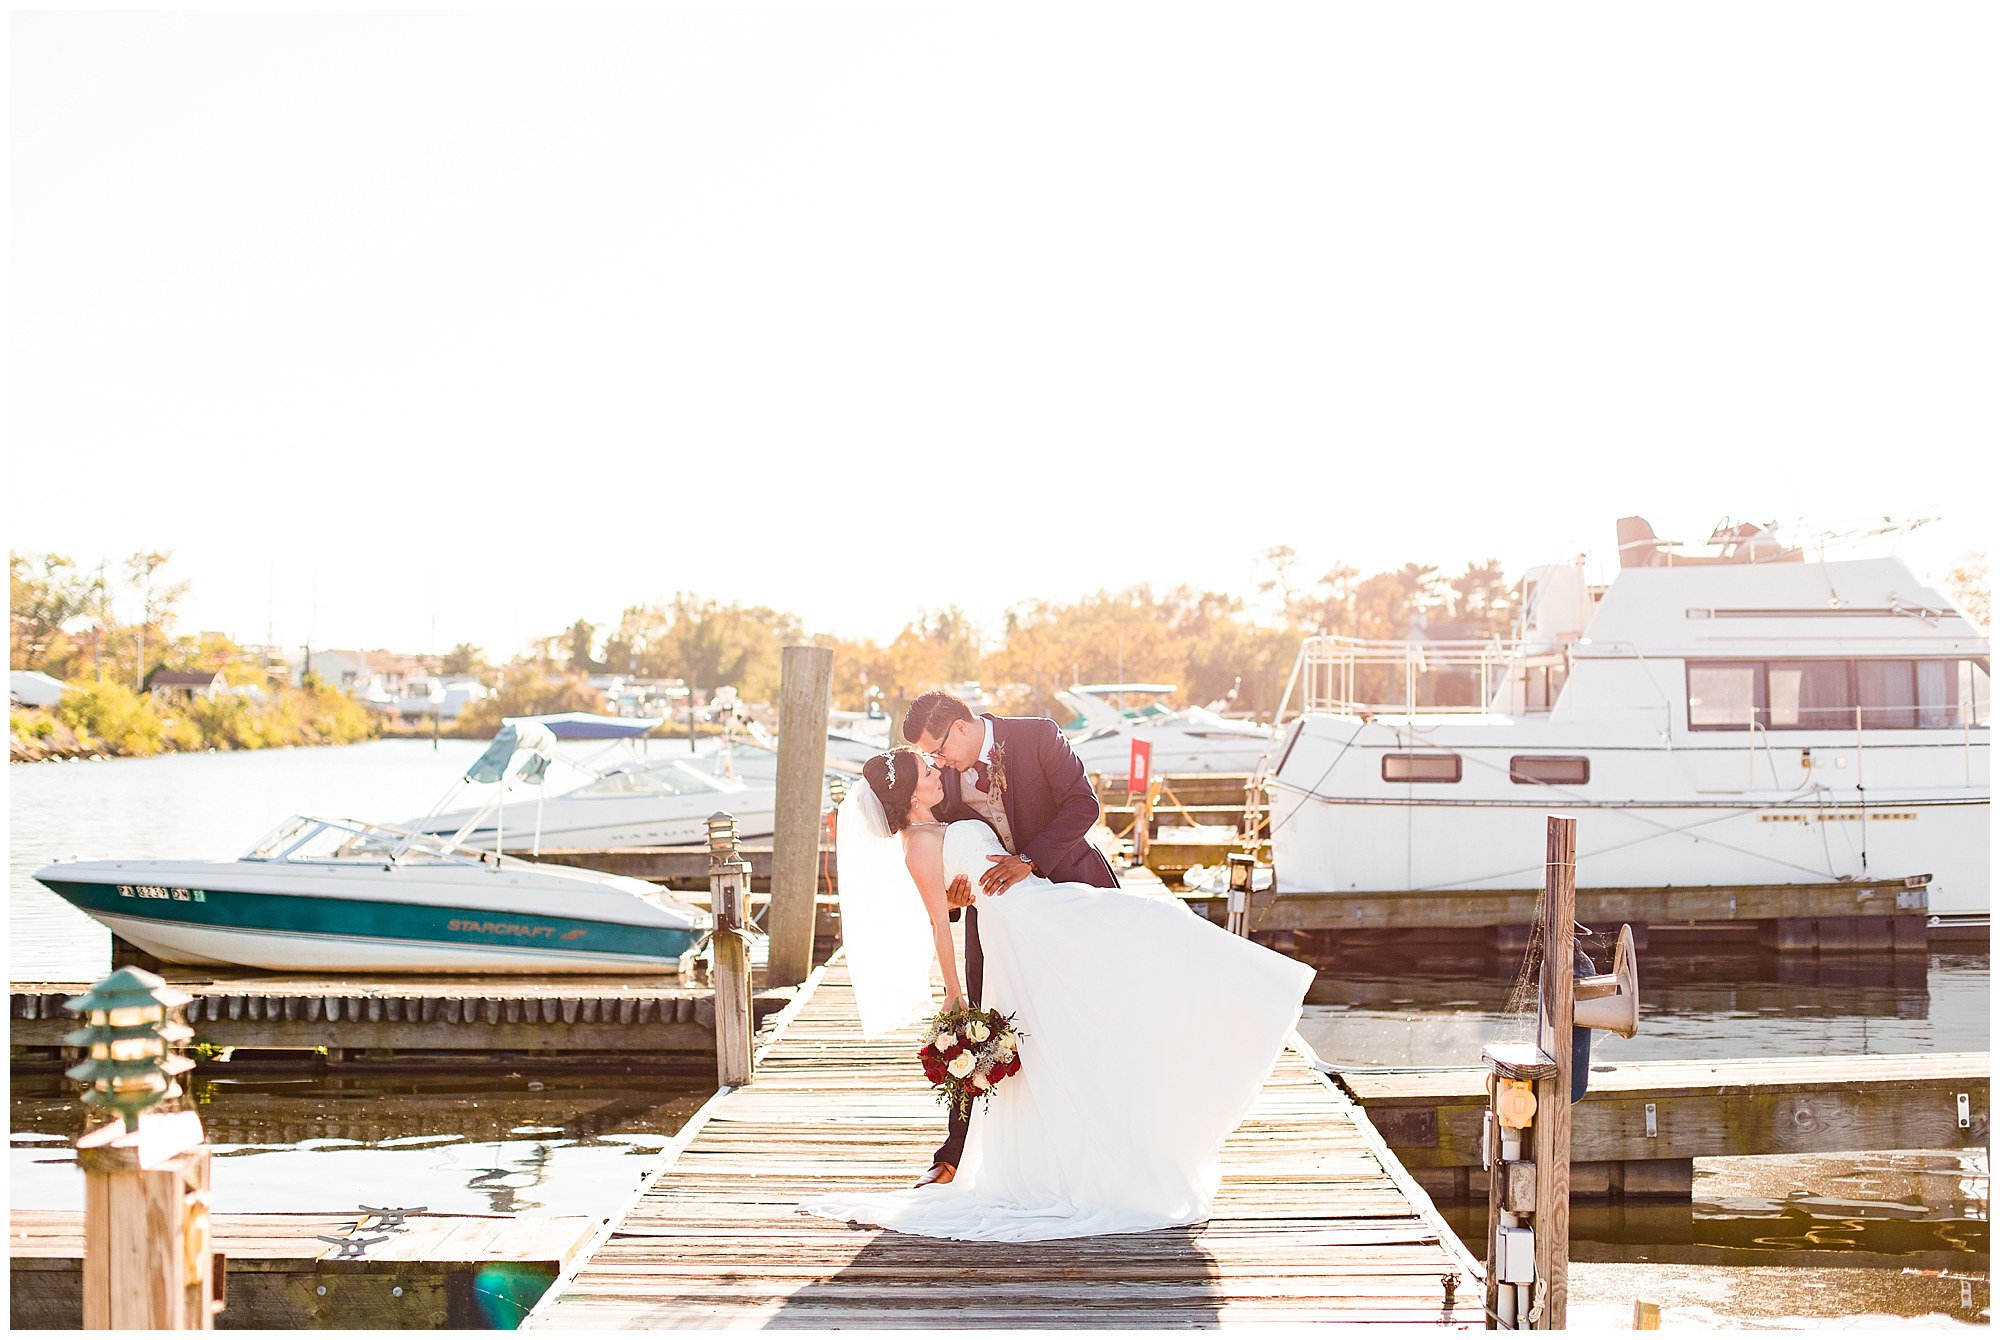 Julio & Elizabeths Fall Wedding at Clarks Landing Yacht Club in Delran NJ Photos